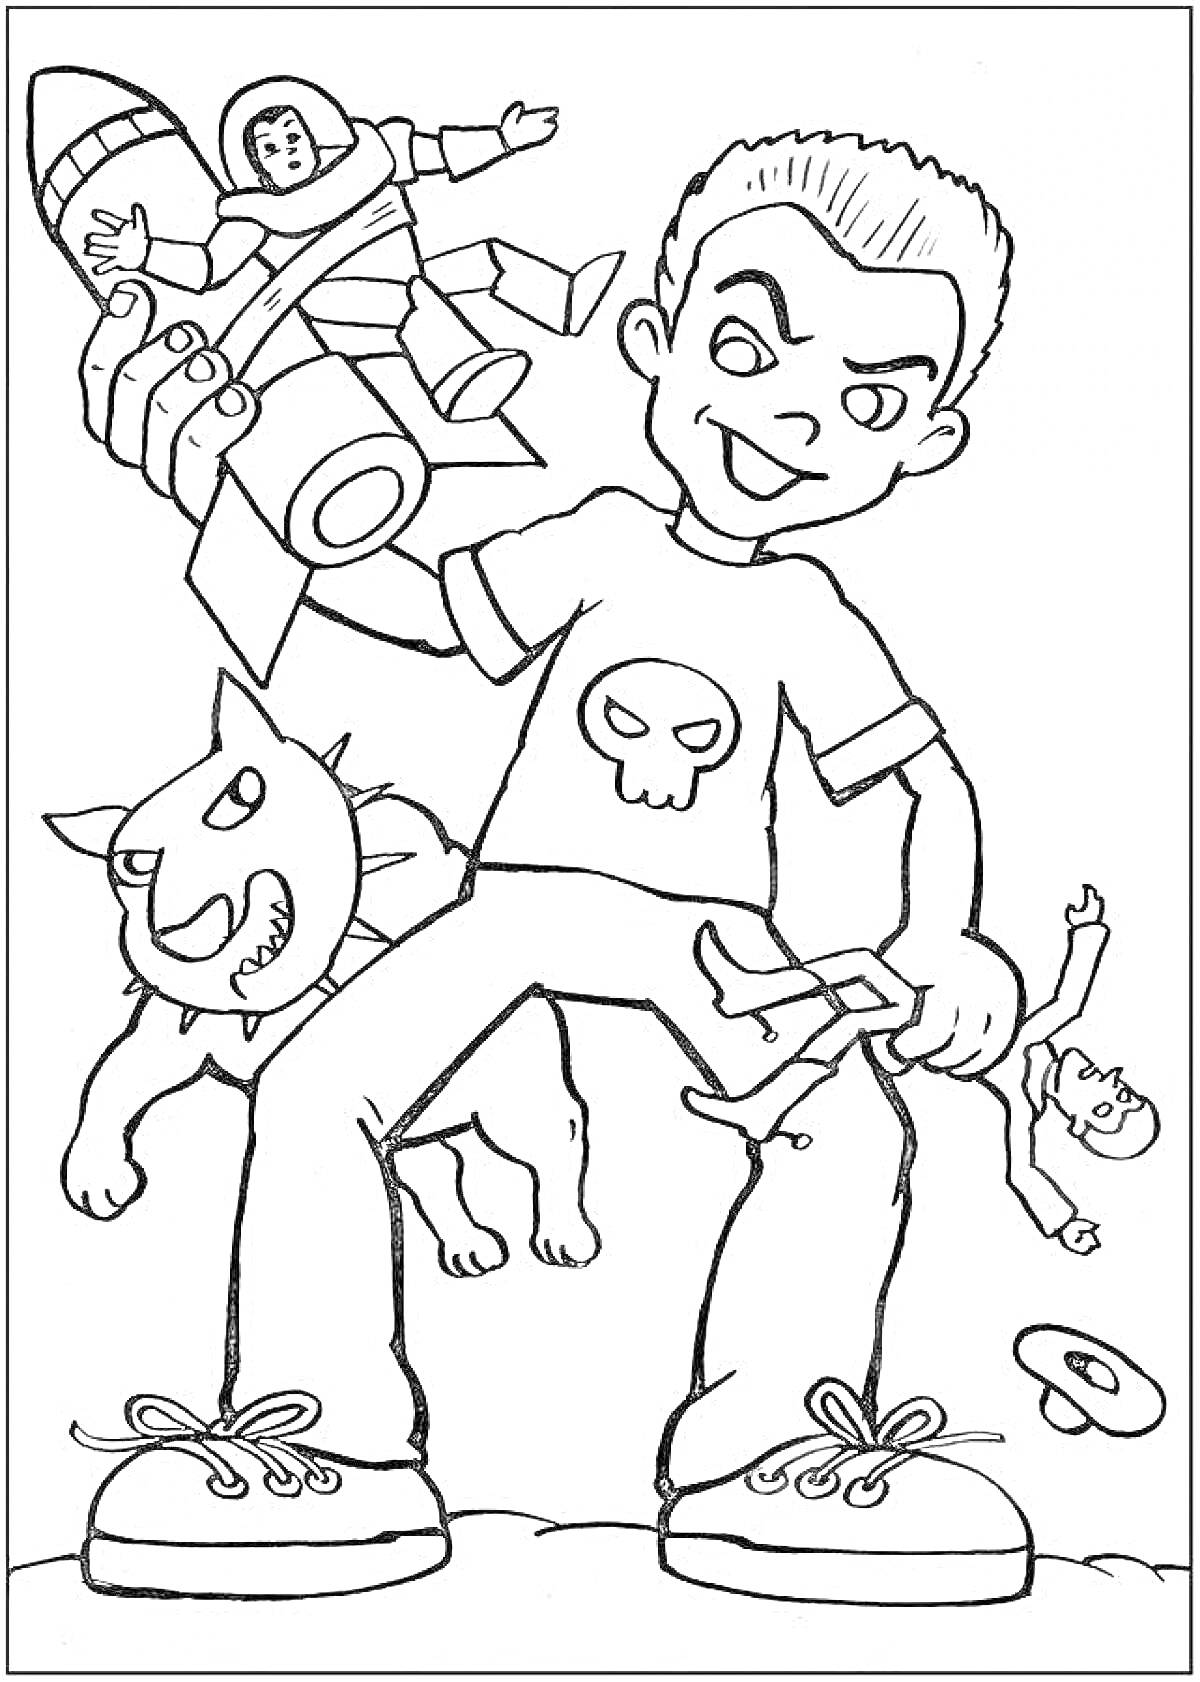 Раскраска Мальчик с прической андеркат в футболке со скелетом, игрушечный человек с ракетой в одной руке, сломанная кукла в другой руке, агрессивная собака рядом, валяющийся кольцеобразный объект